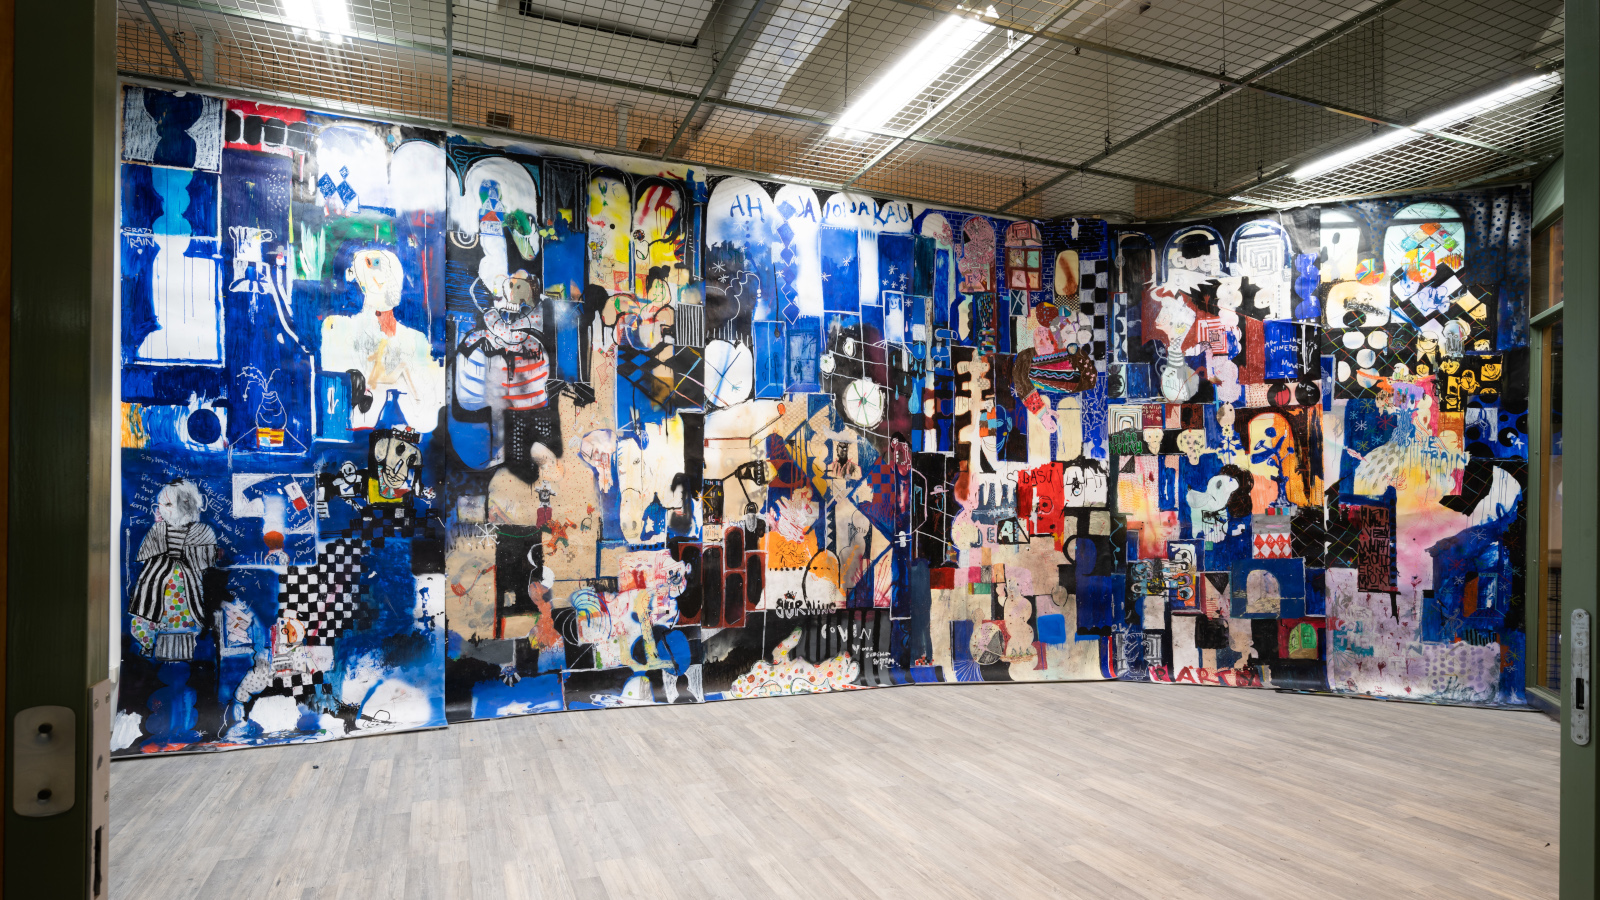 Kuvassa on Kim Somervuoren kuvataidetta iso seinällinen. Kuvasto on kollaasimaista ja sävy sininen.